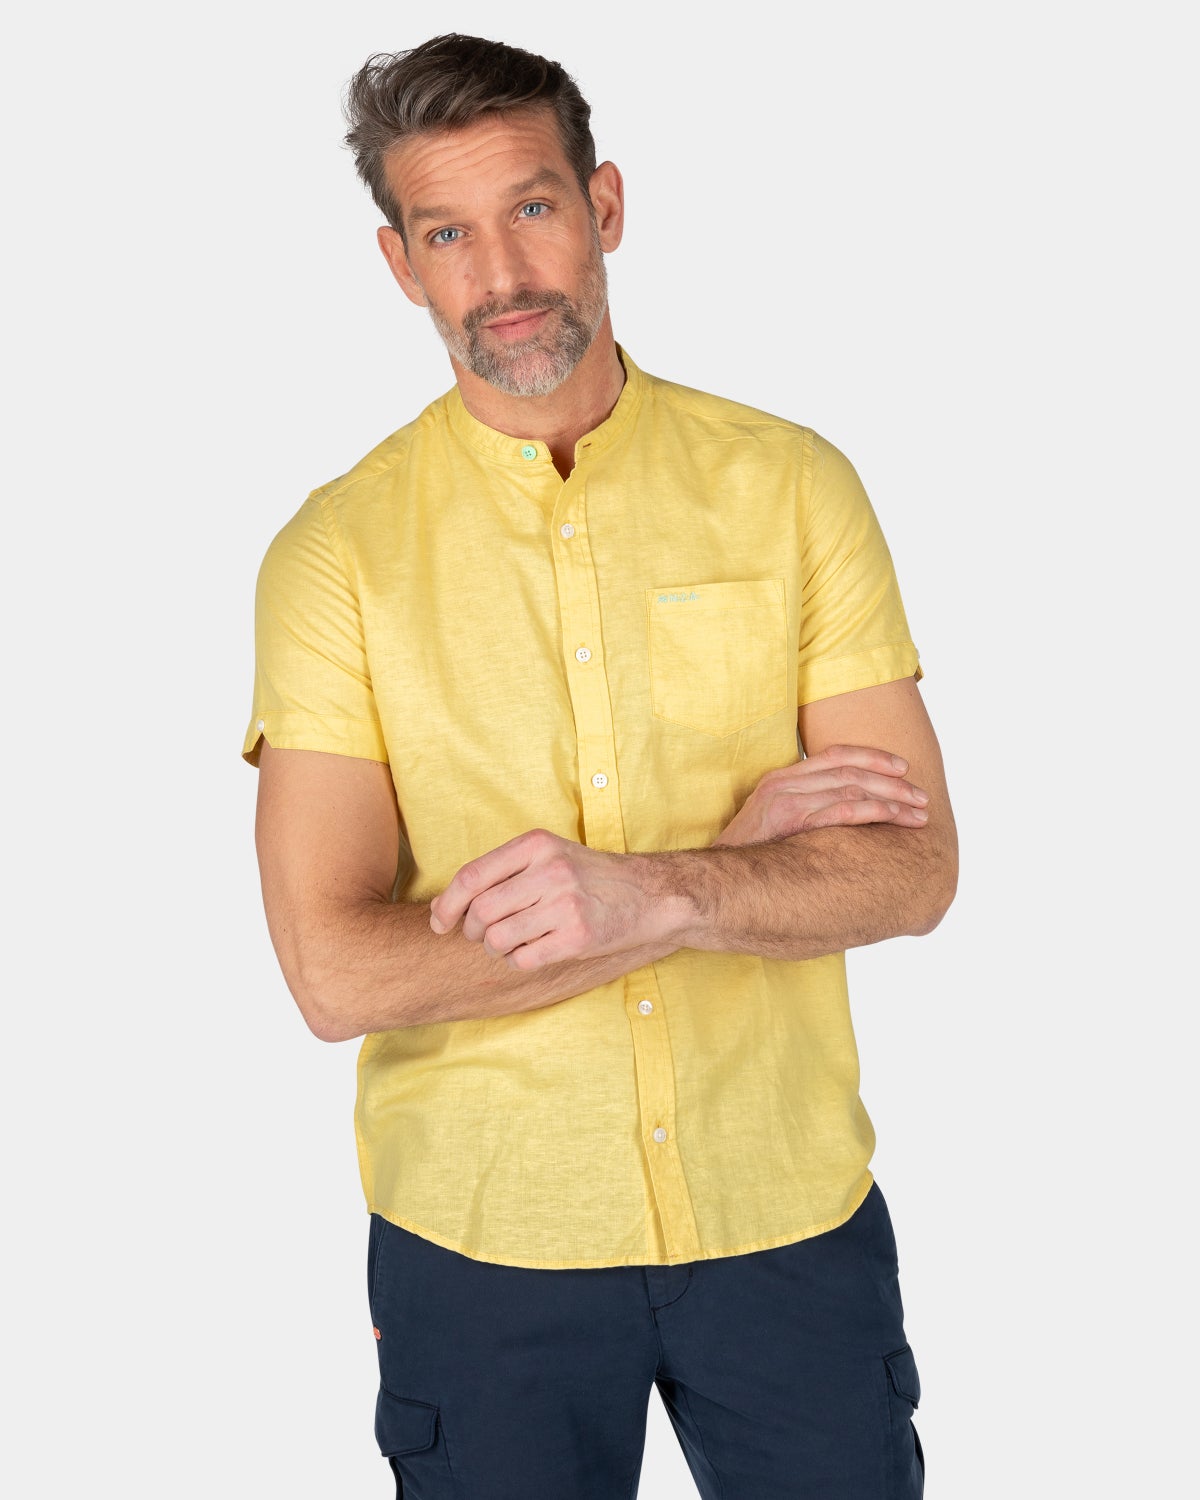 Collarless shirt with short sleeves - Iguana Yellow